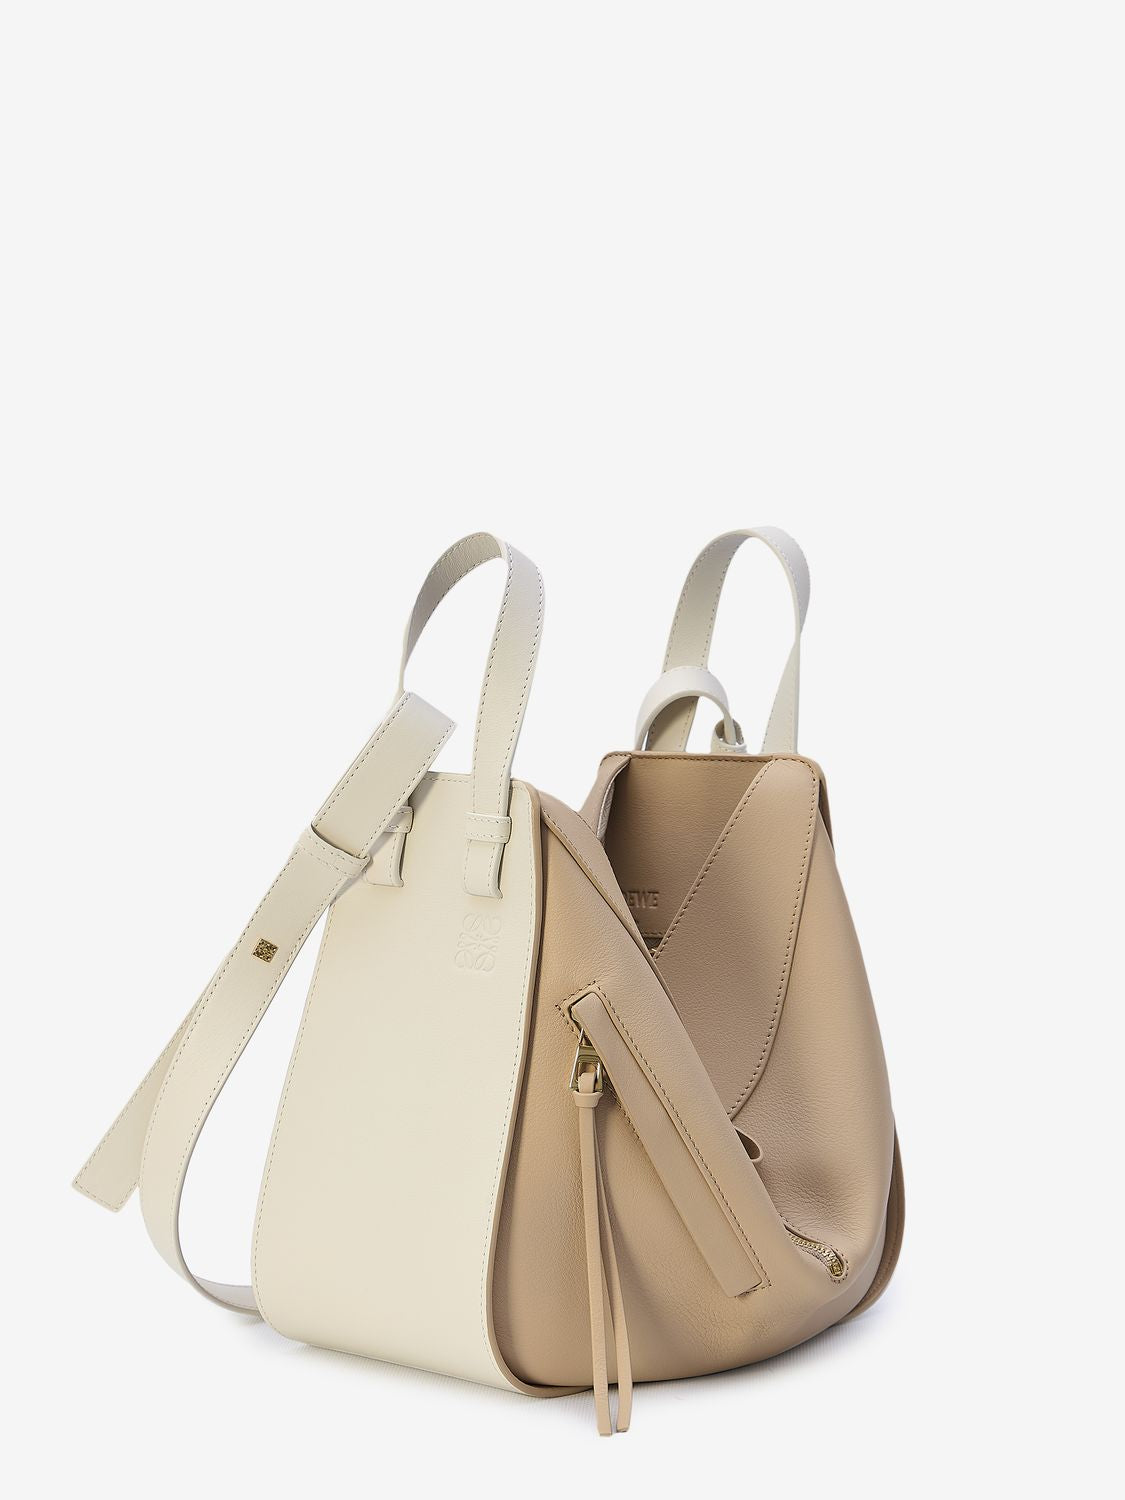 White and Beige Calfskin Hammock Handbag for Women